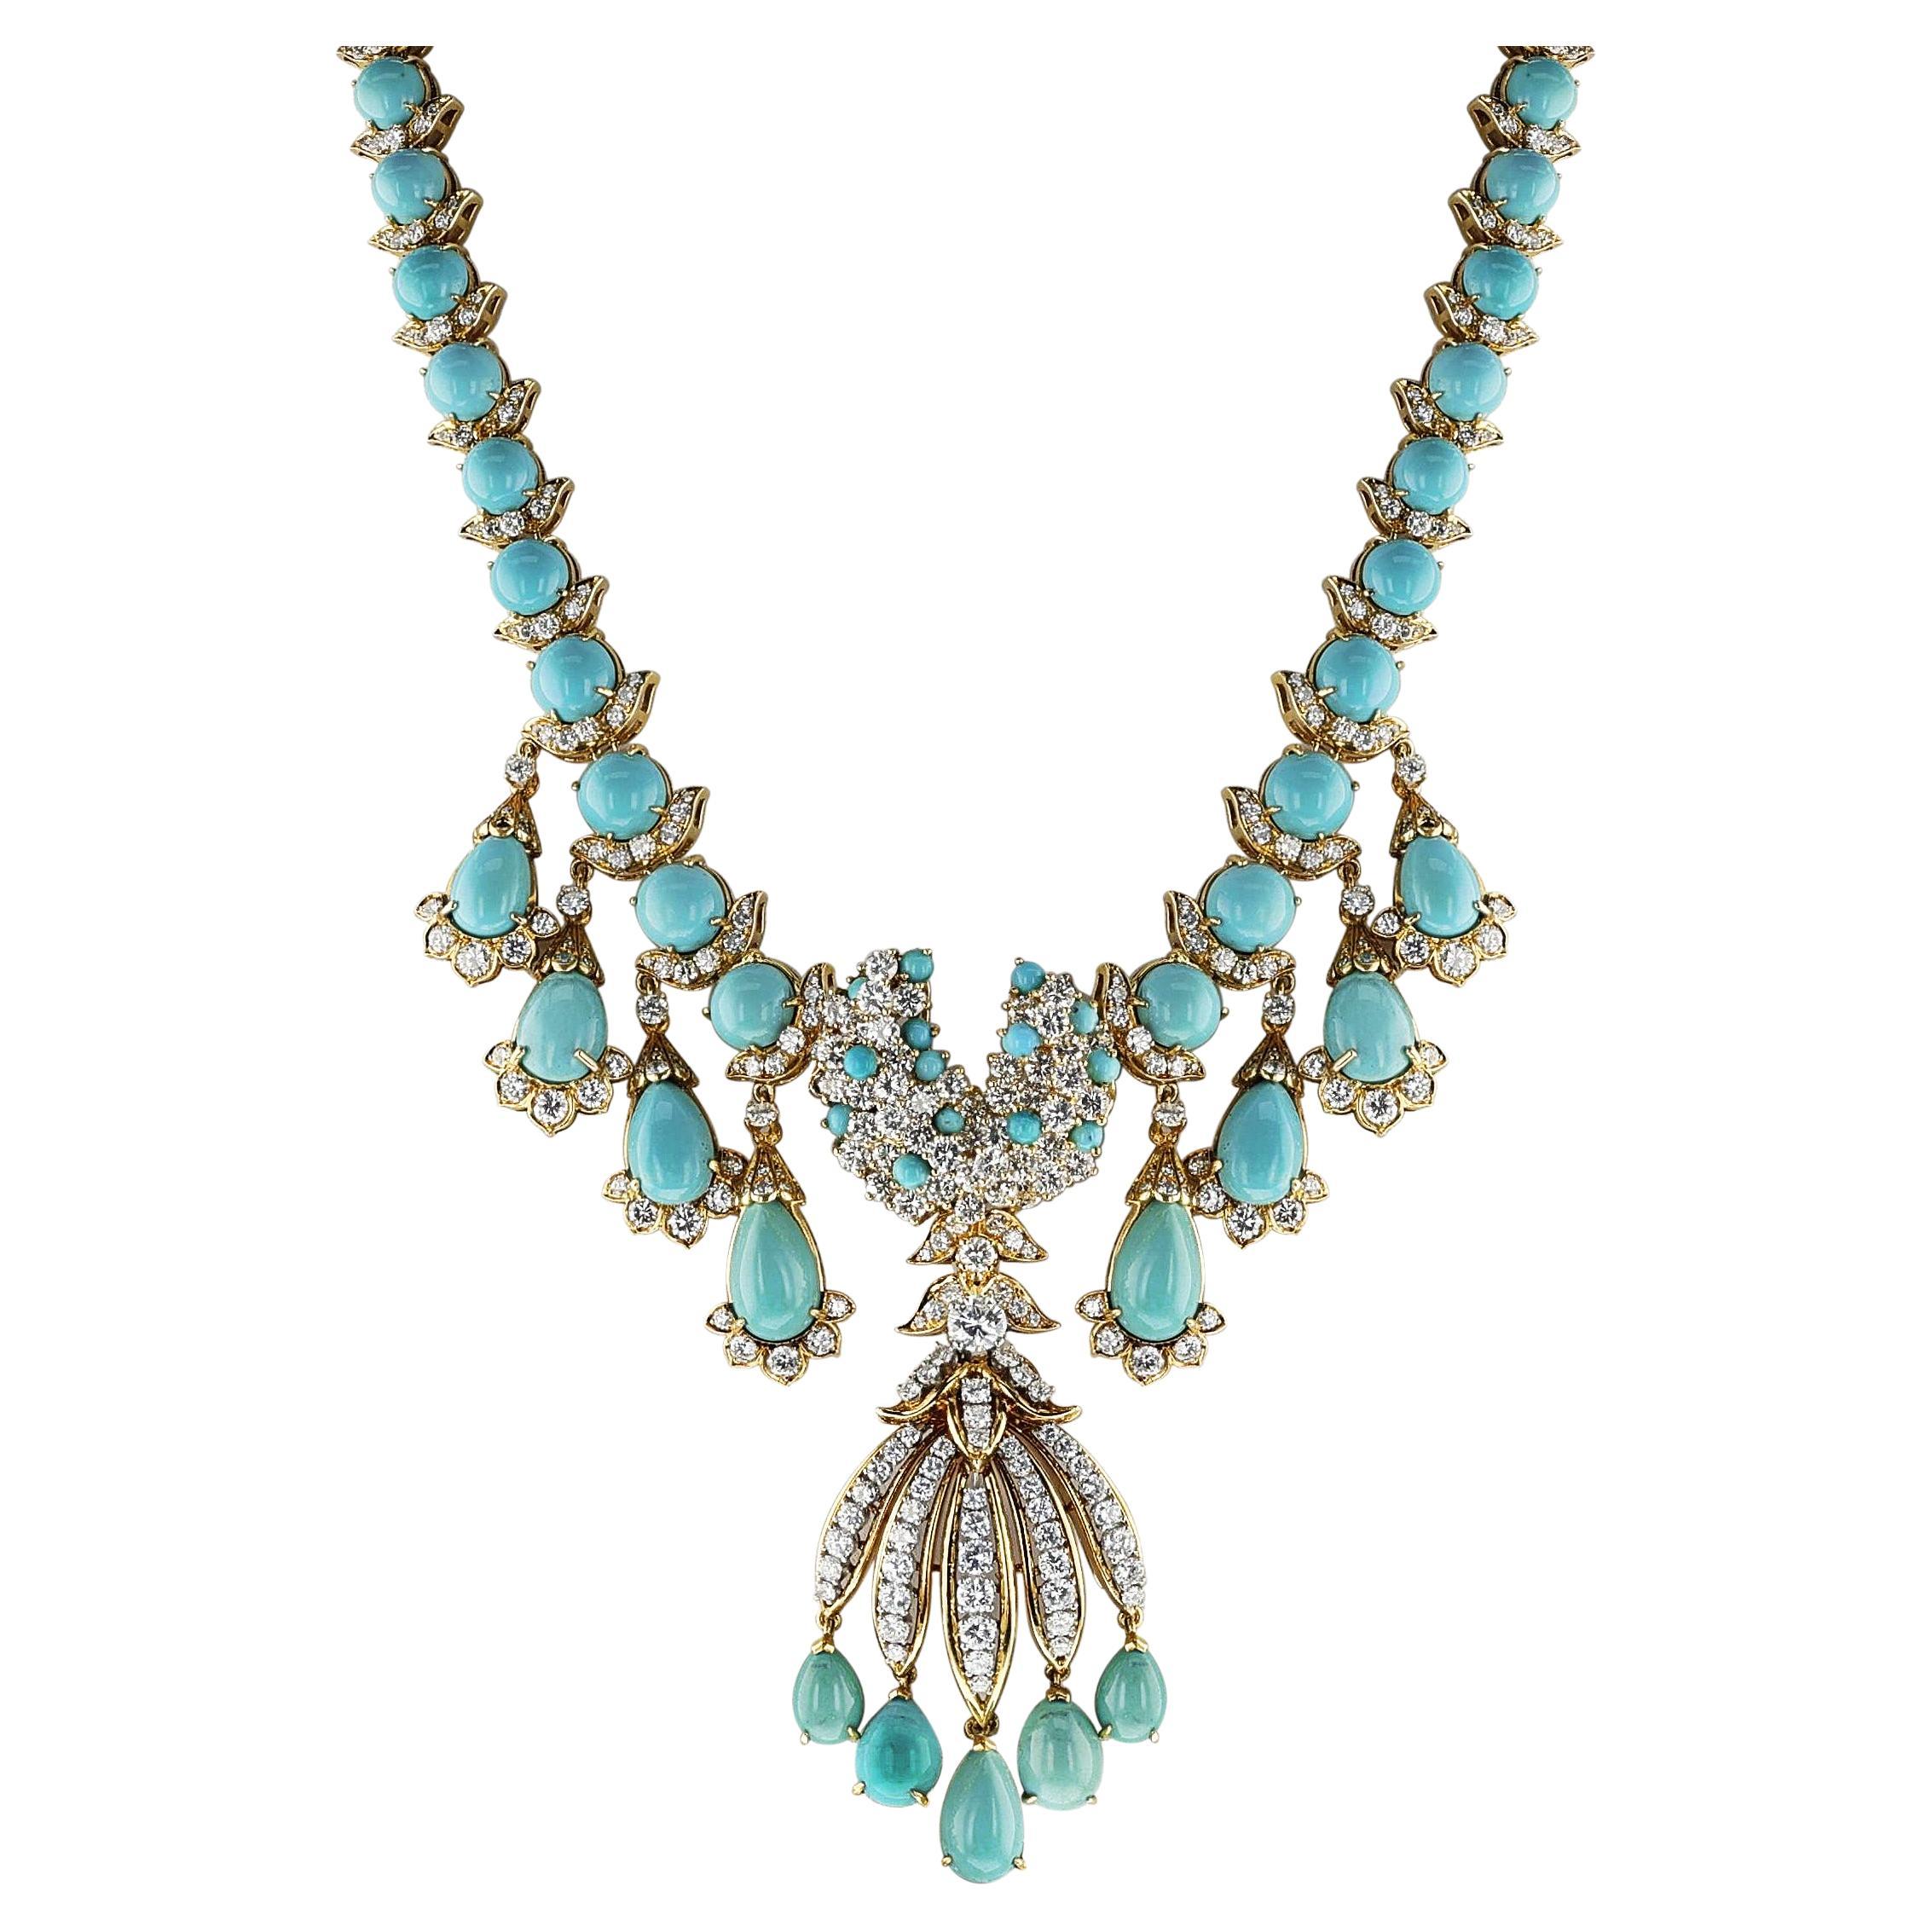 Collier à franges en turquoise et diamants, broche amovible, 18k